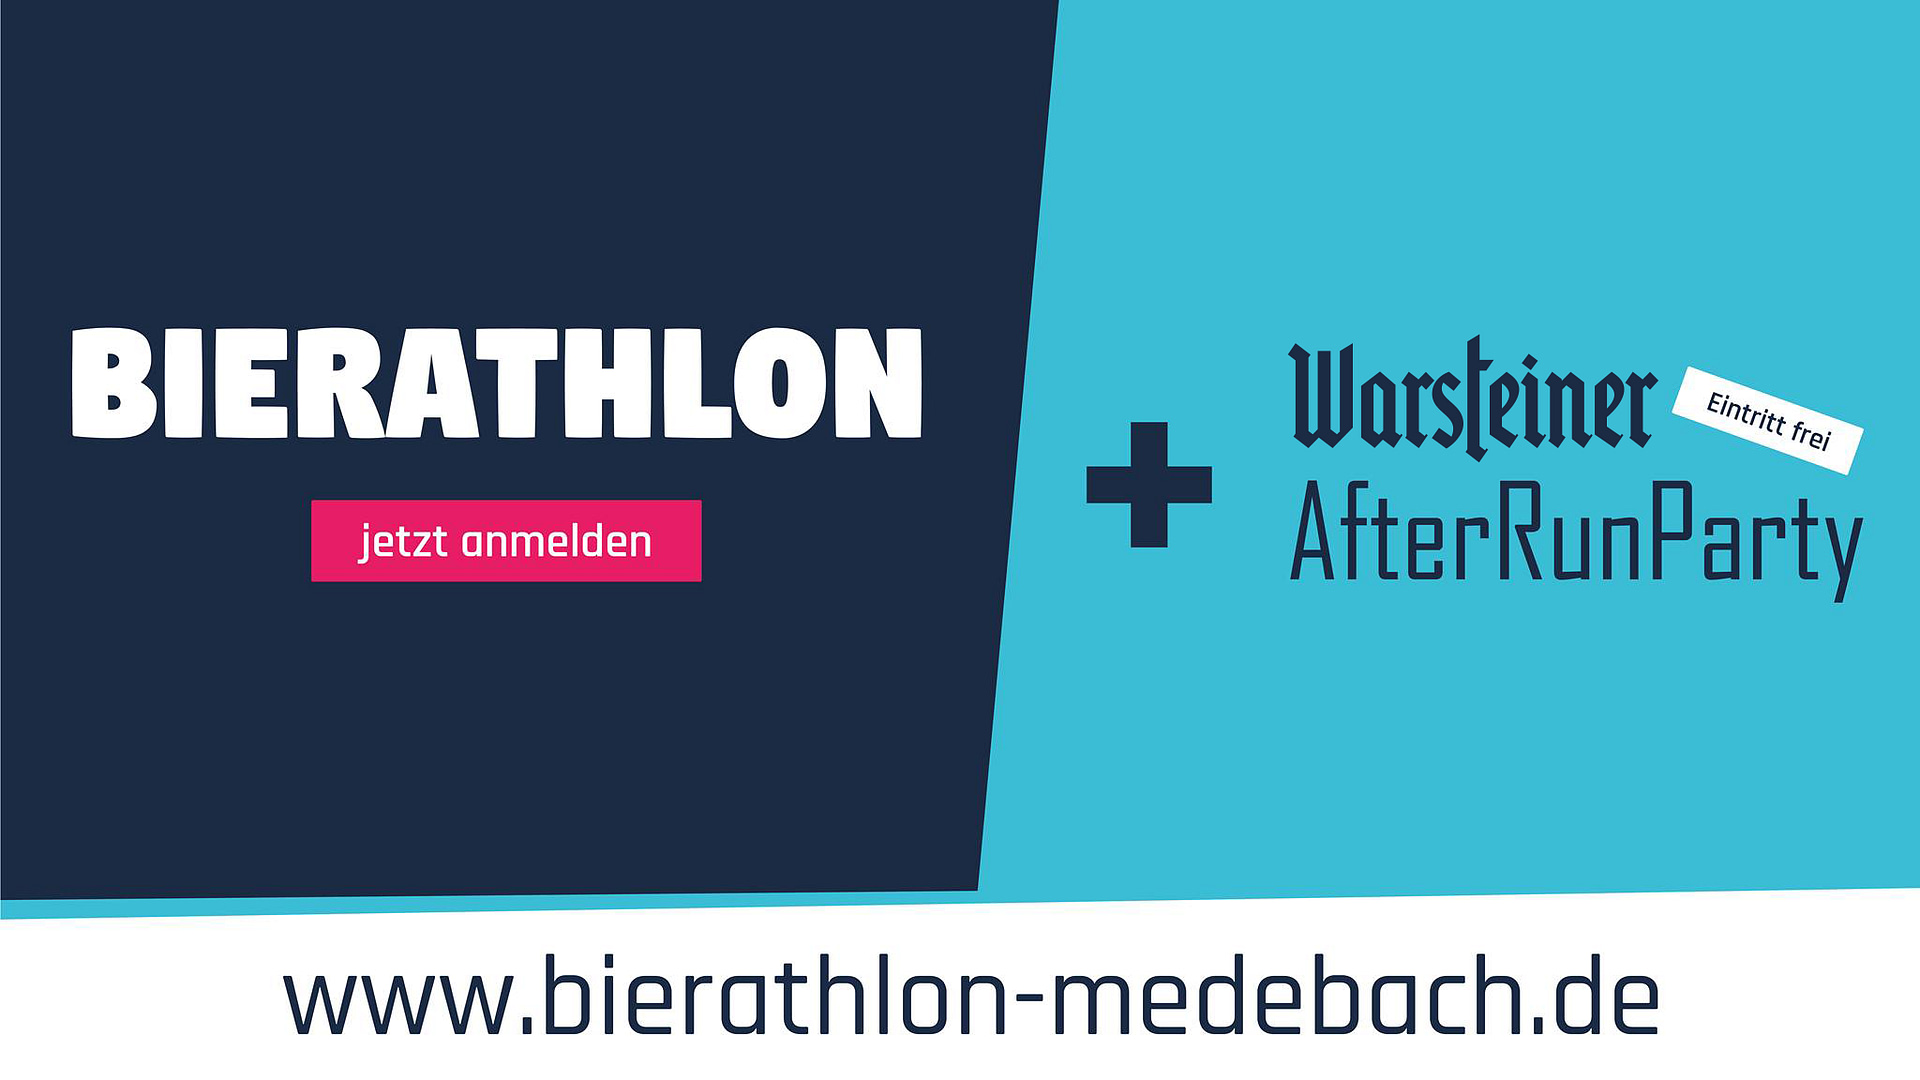 (c) Bierathlon-medebach.de